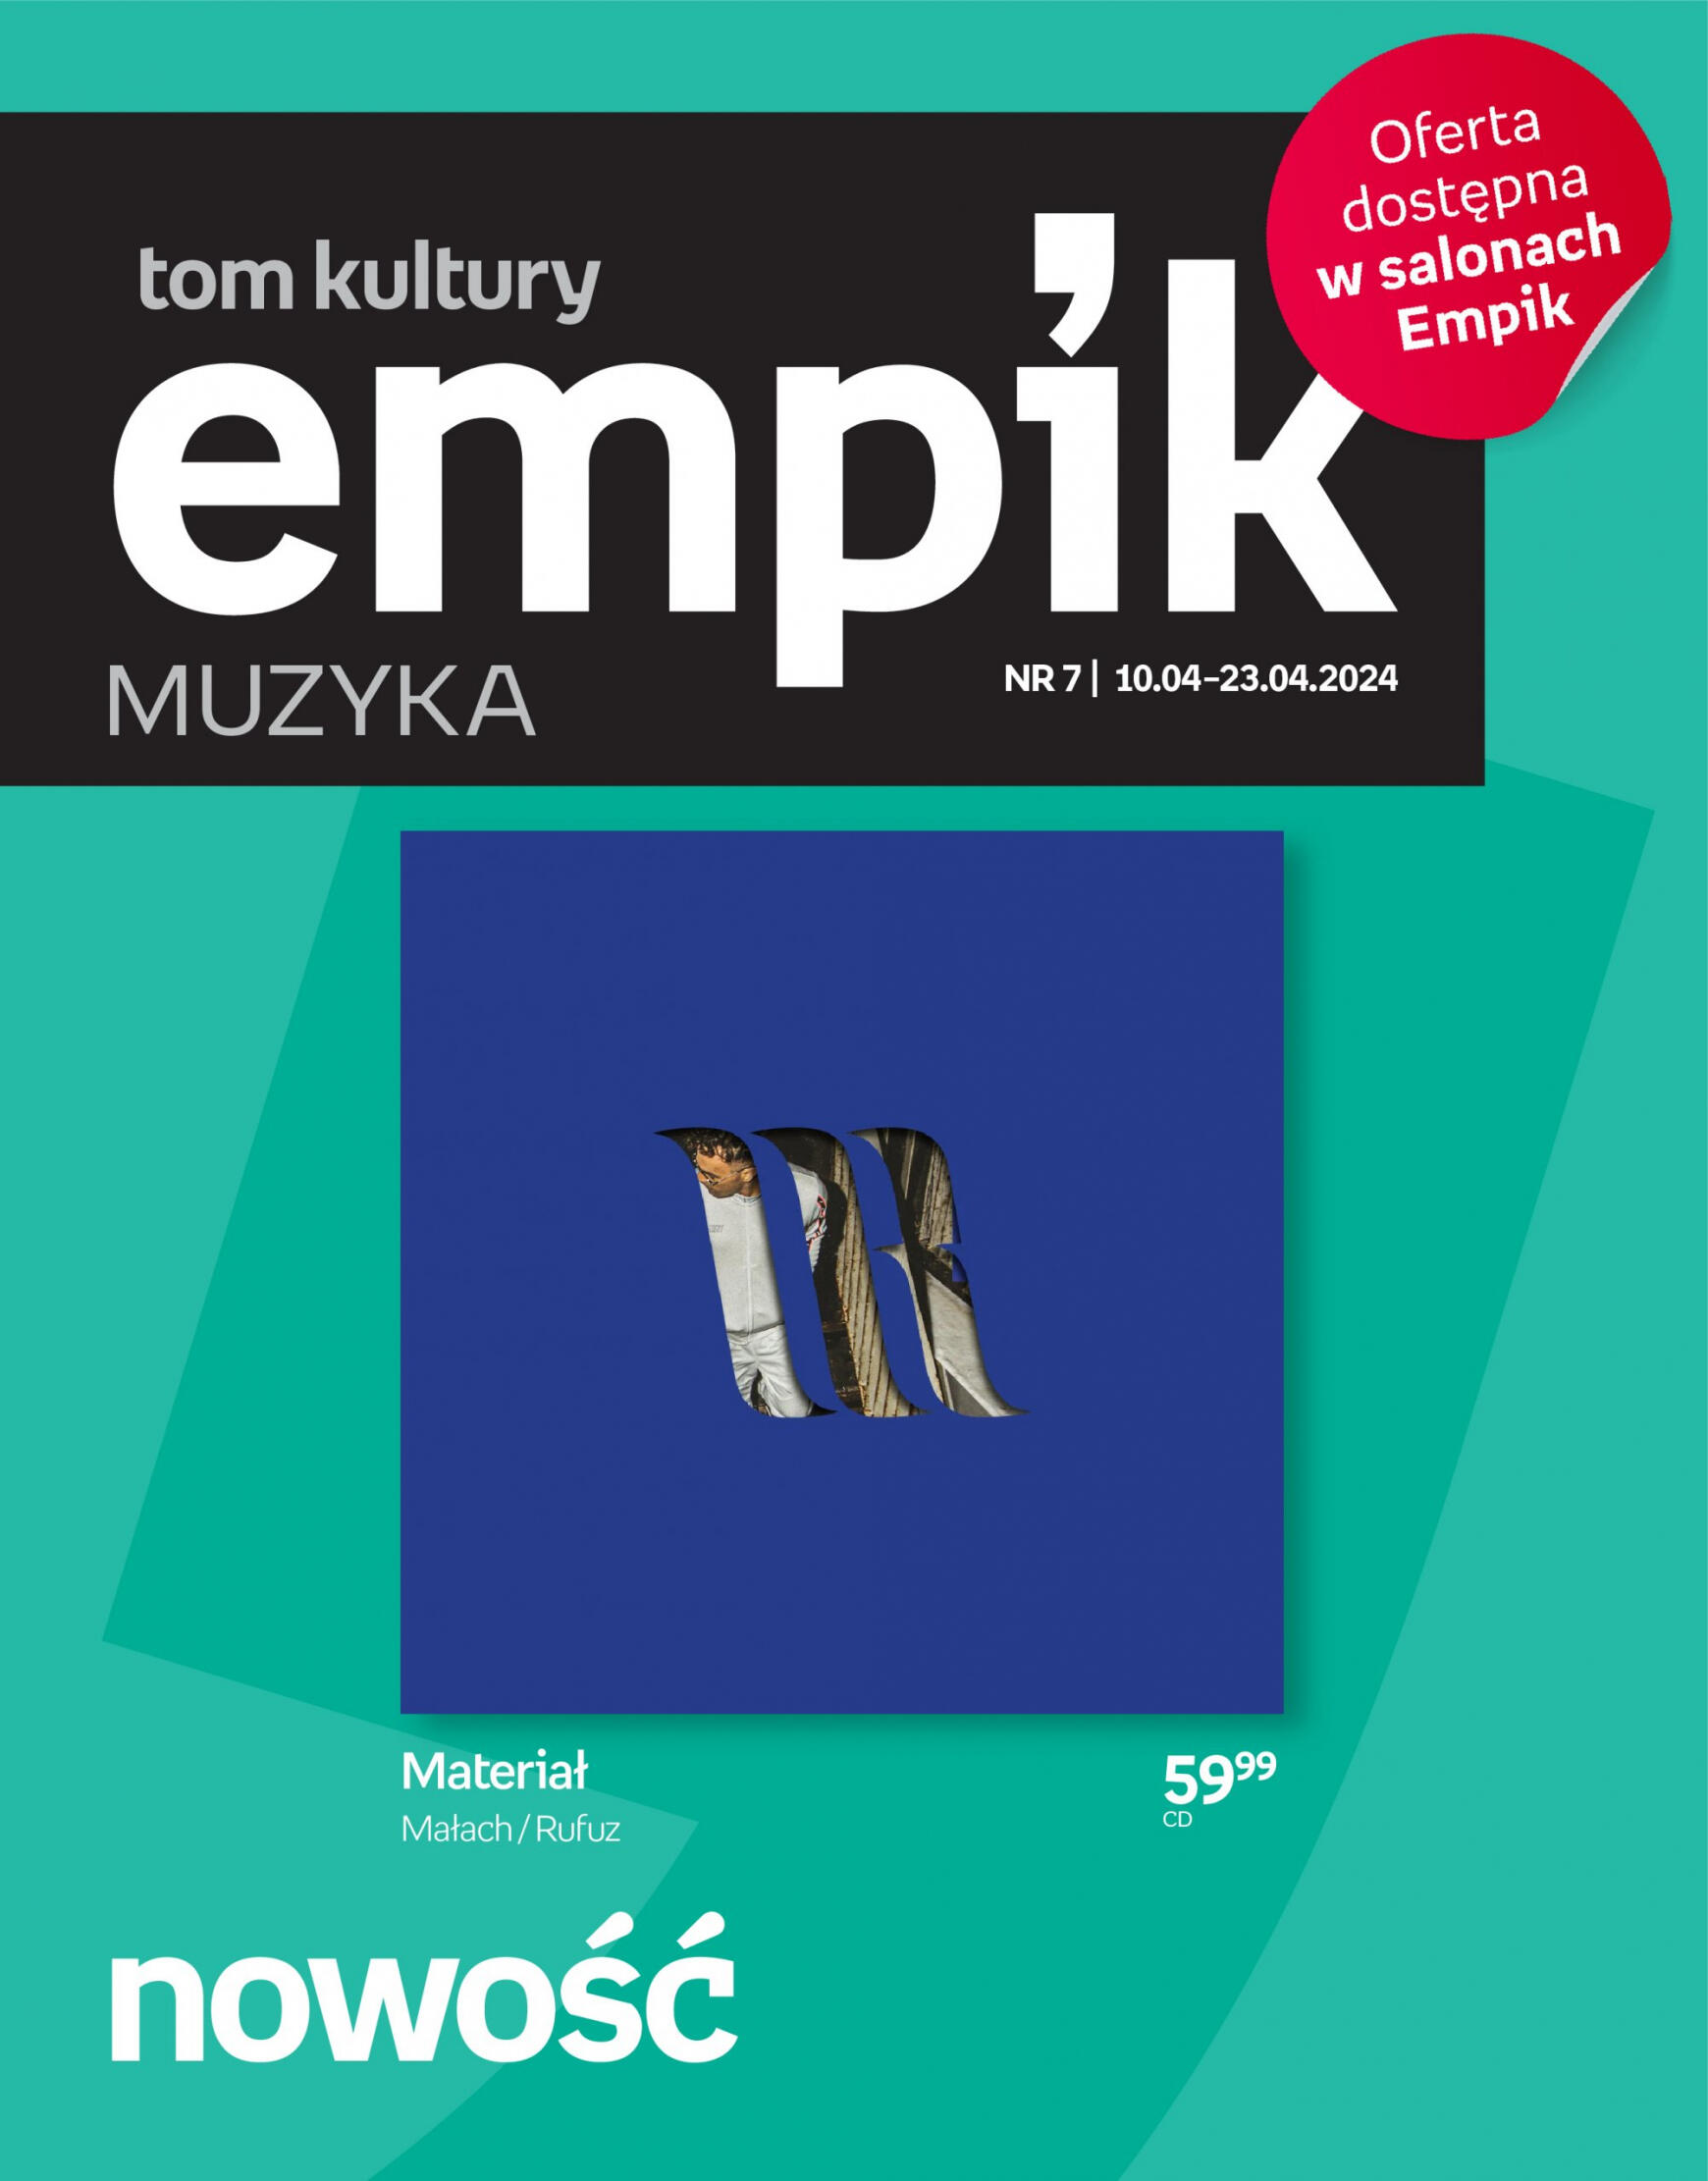 empik - Empik - Tom kultury muzyka gazetka aktualna ważna od 10.04. - 23.04.